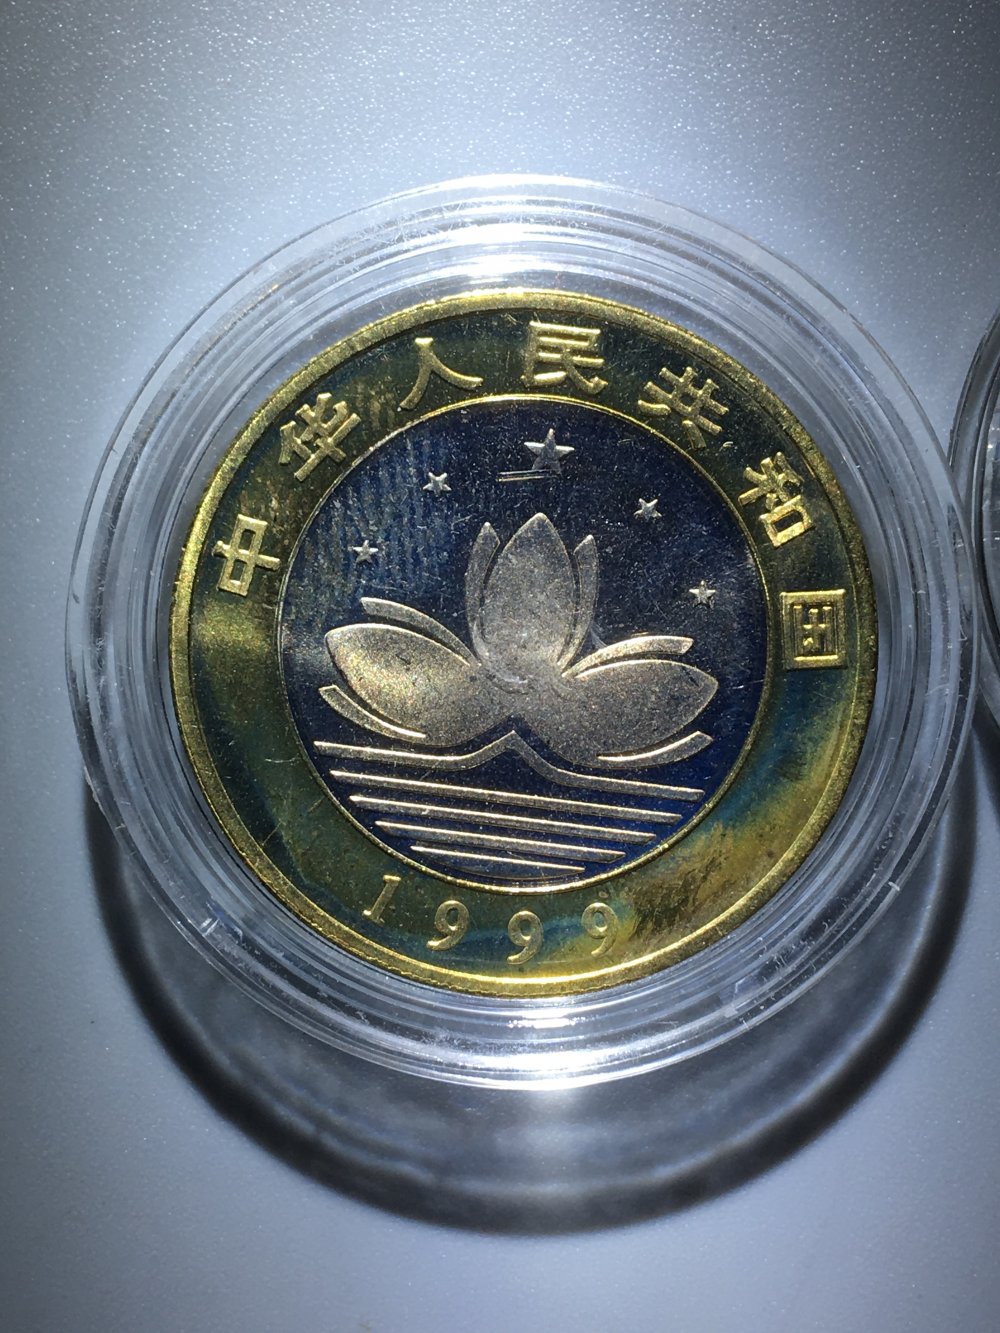 澳门硬币1豪图片